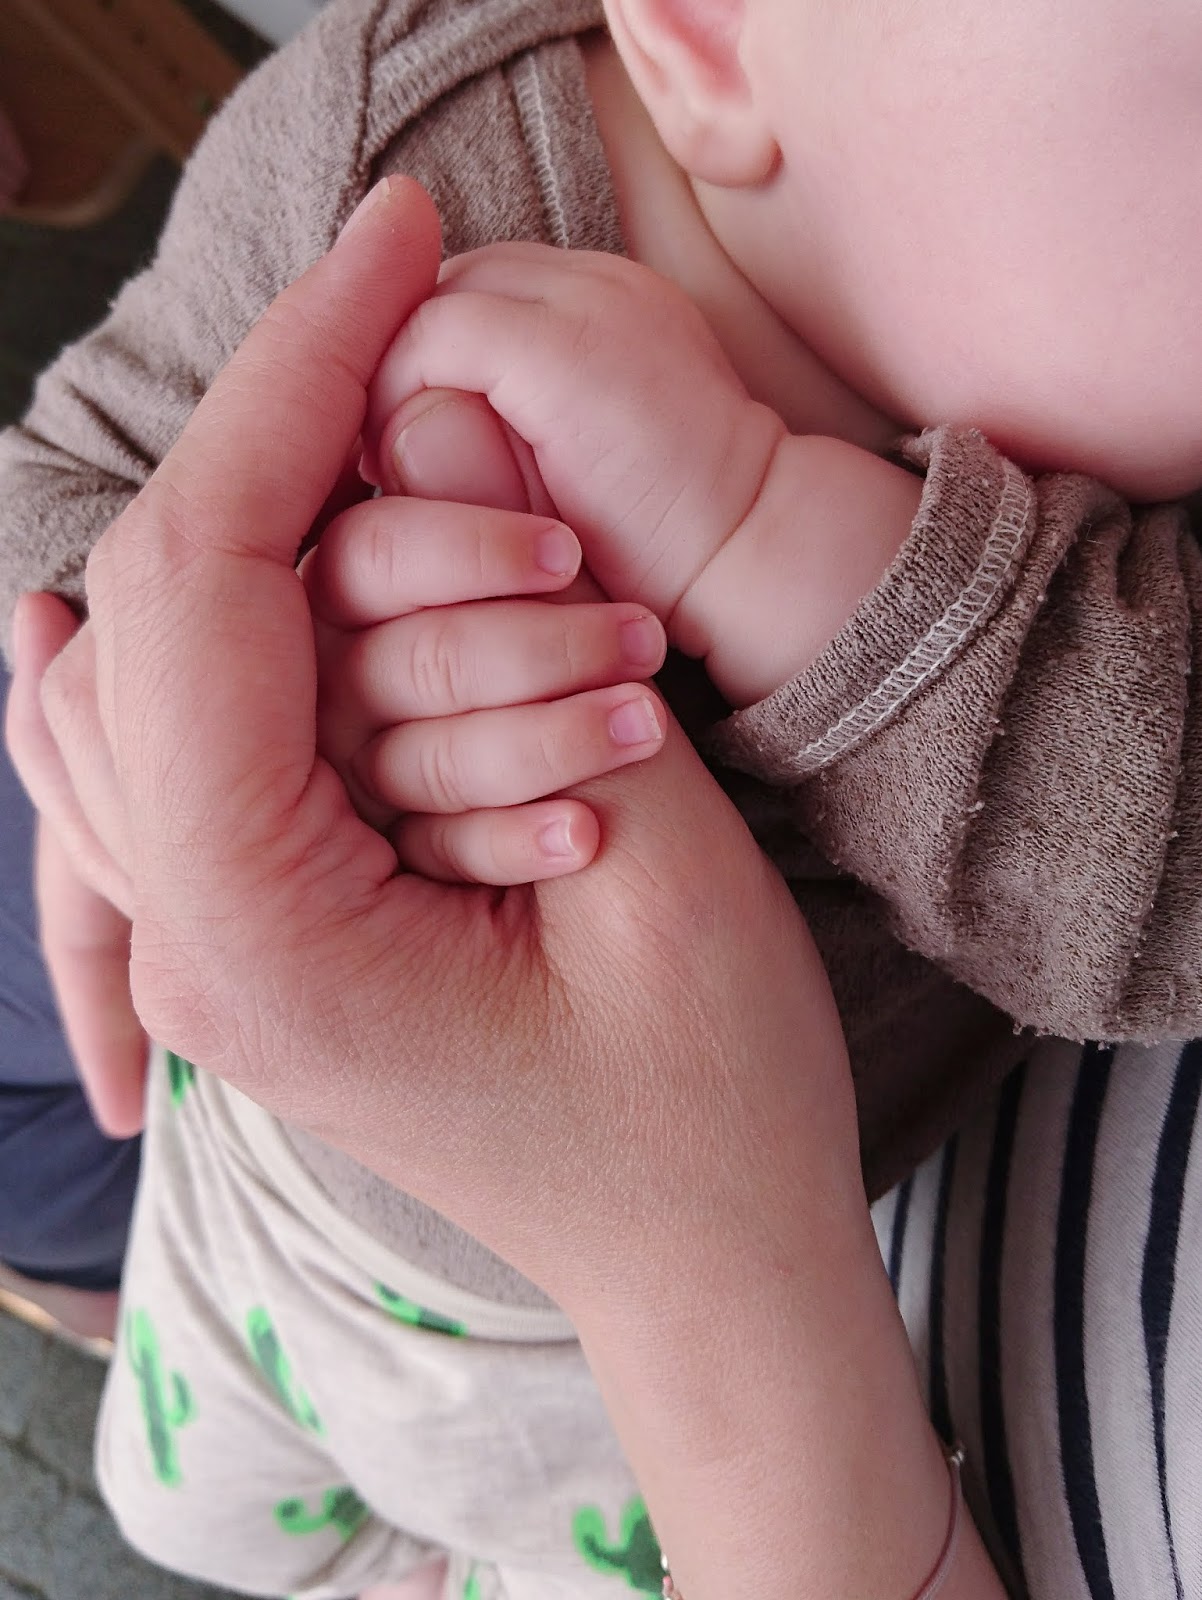 Mit wellcome durch's erste Lebensjahr | Praktische Hilfe nach der Geburt | judetta.de